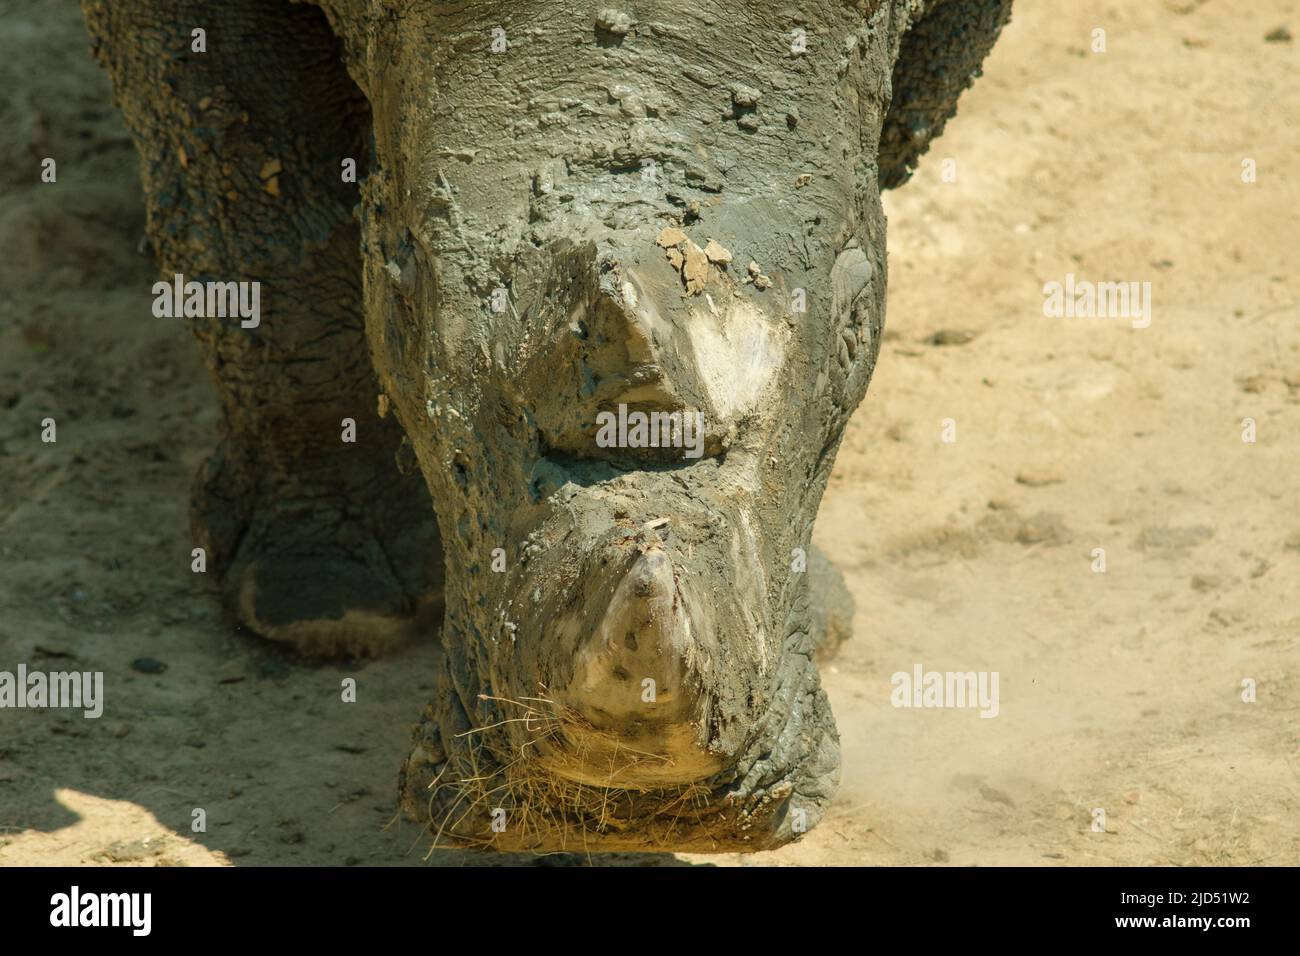 Vue en gros plan de la tête d'un rhinocéros Banque D'Images